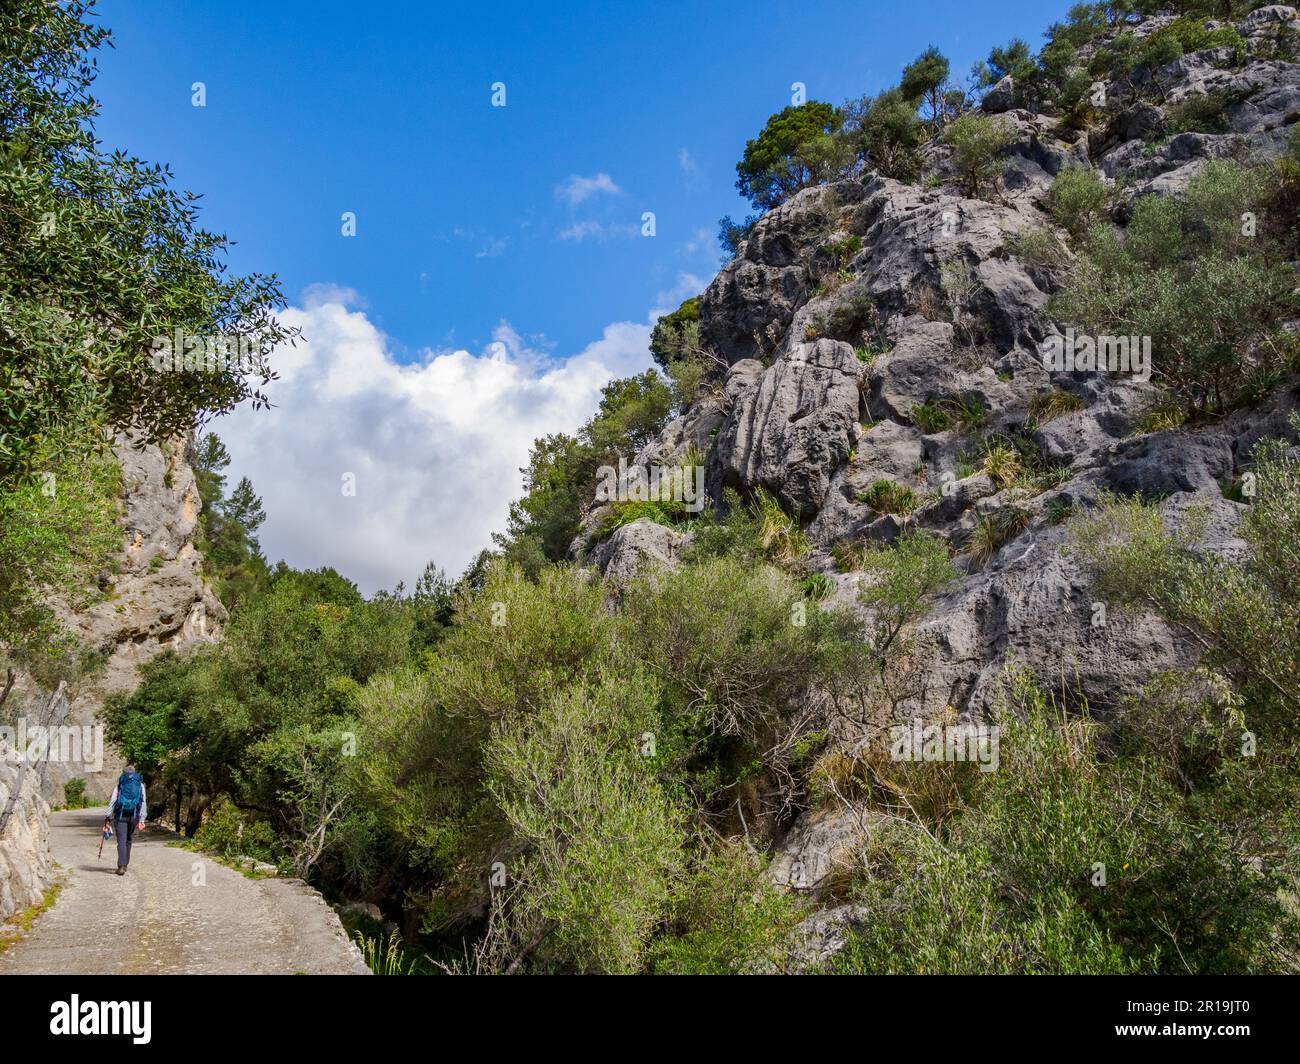 Wandern Sie auf einer Strecke, die durch die felsigen Pas de s'Escaleta von Alaro nach Orient in den Tramuntana-Bergen im Norden Mallorcas Spaniens führt Stockfoto